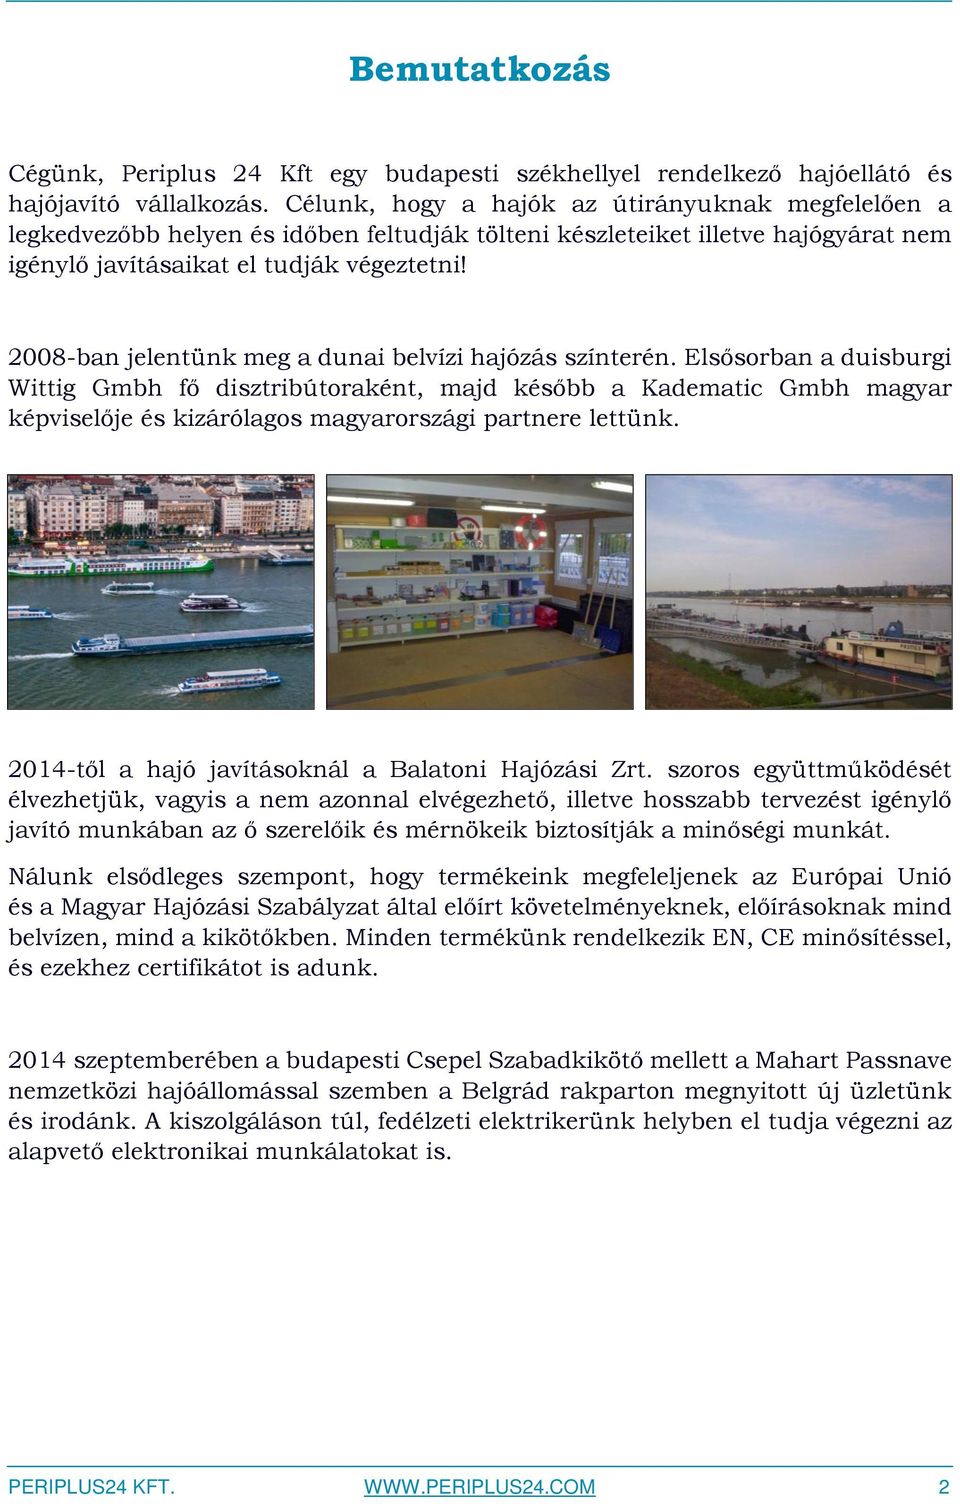 2008-ban jelentünk meg a dunai belvízi hajózás színterén.